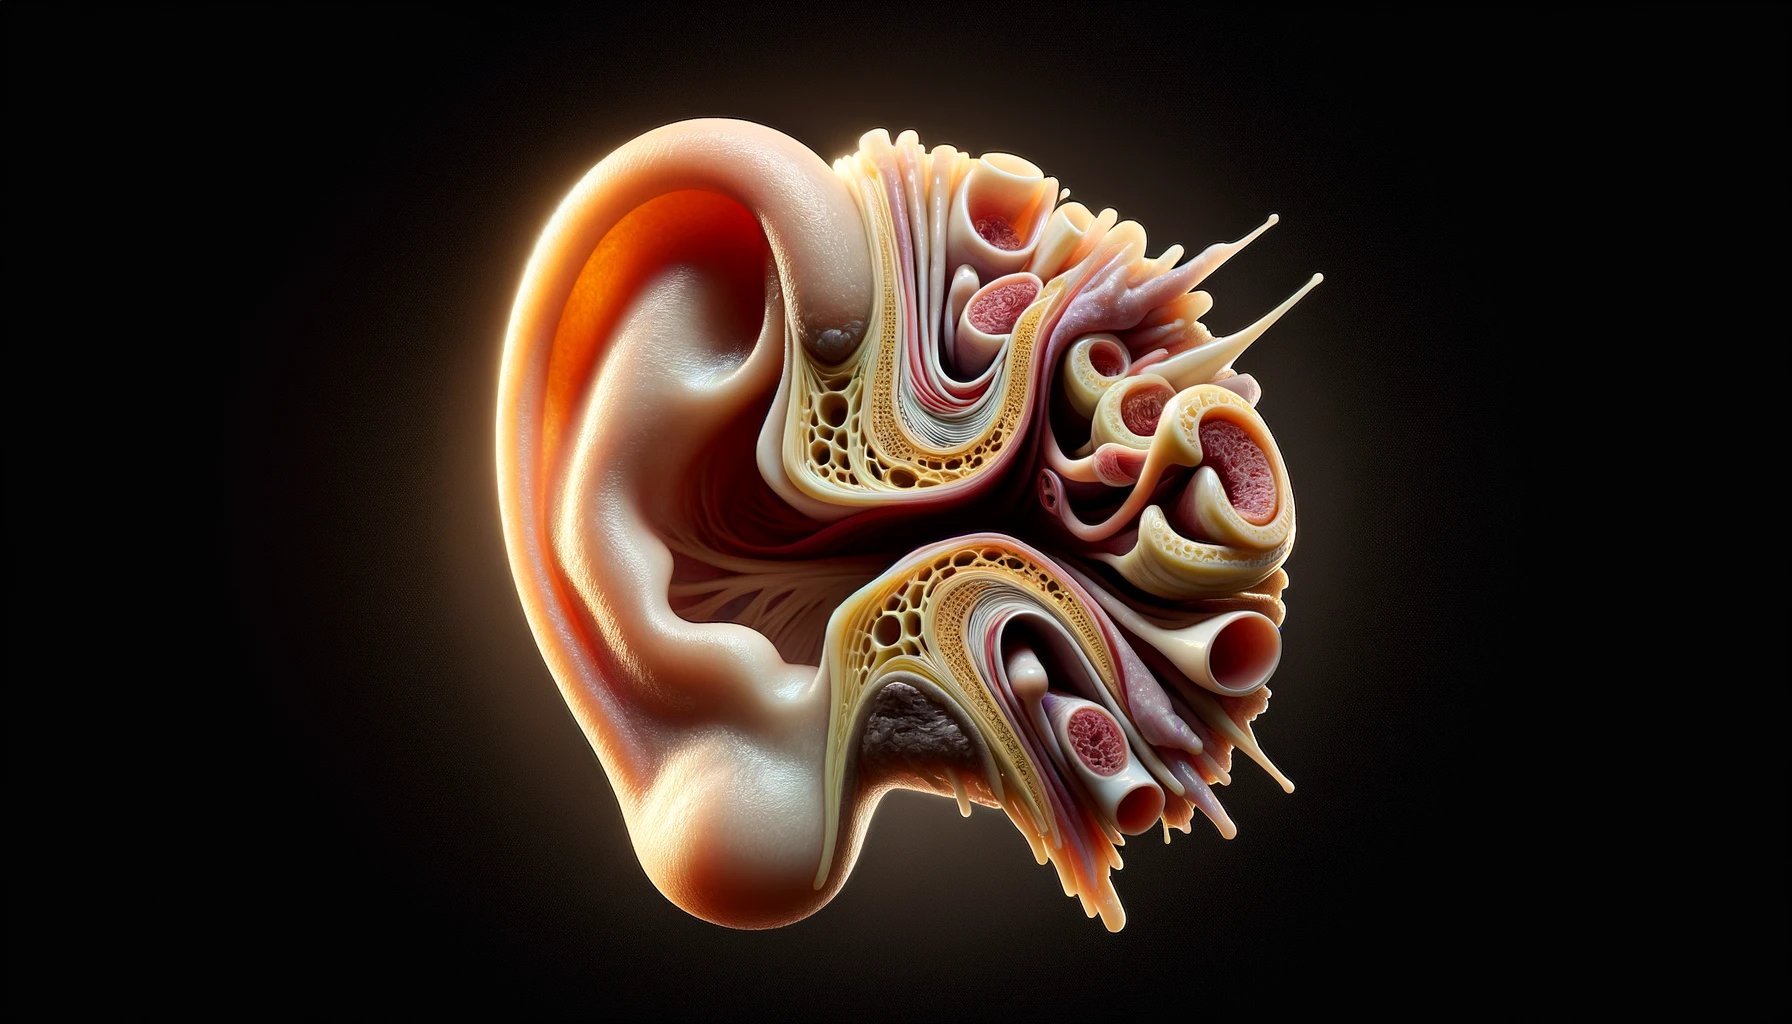 anatomía del oído y función de la cera auditiva